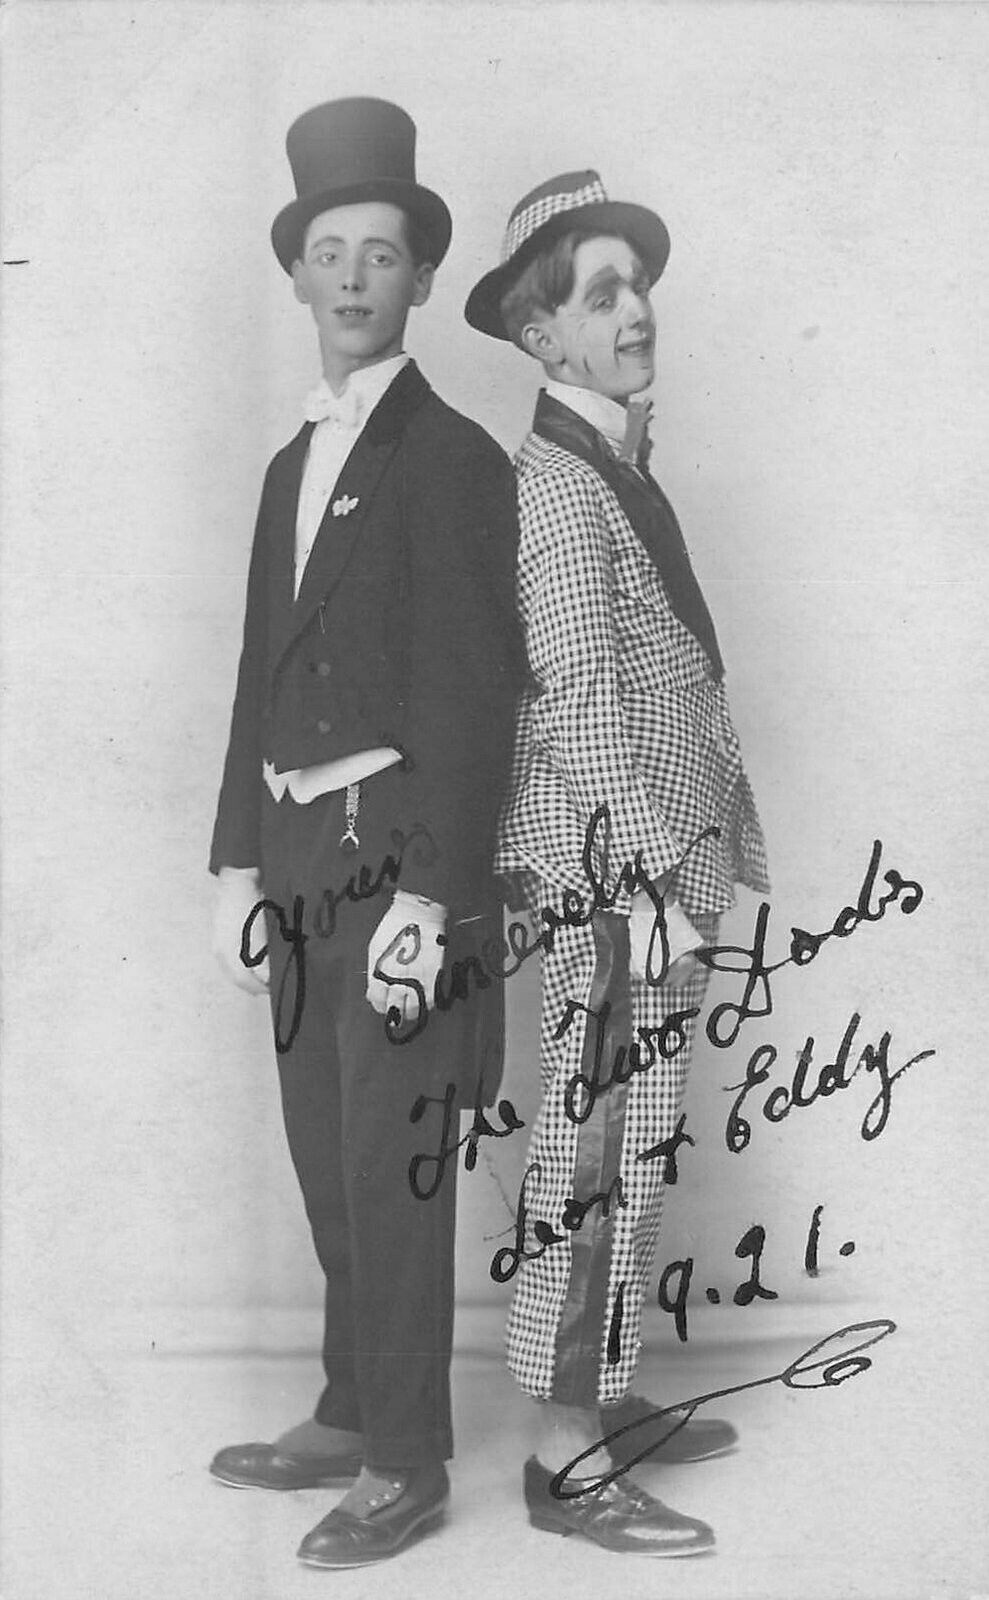 RPPC Postcard 1921 Leon & Eddy Vaudeville entertainers autograph 23-3585